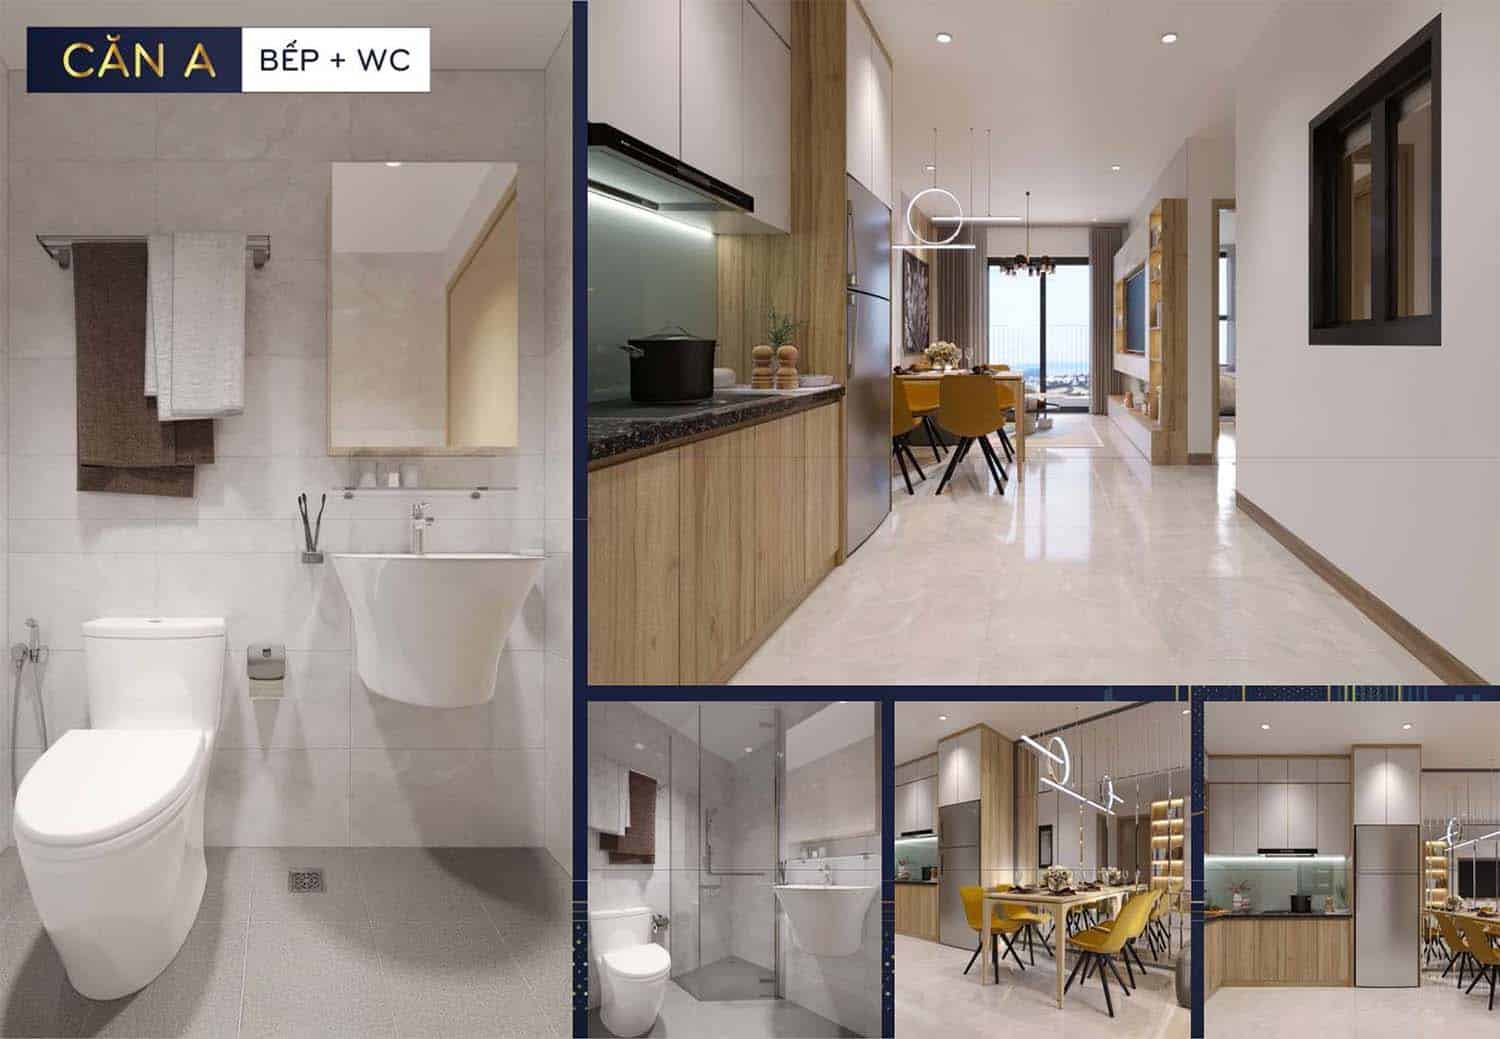 Hình ảnh thiết kế nhà mẫu Bcons Polaris căn A phòng bếp và WC